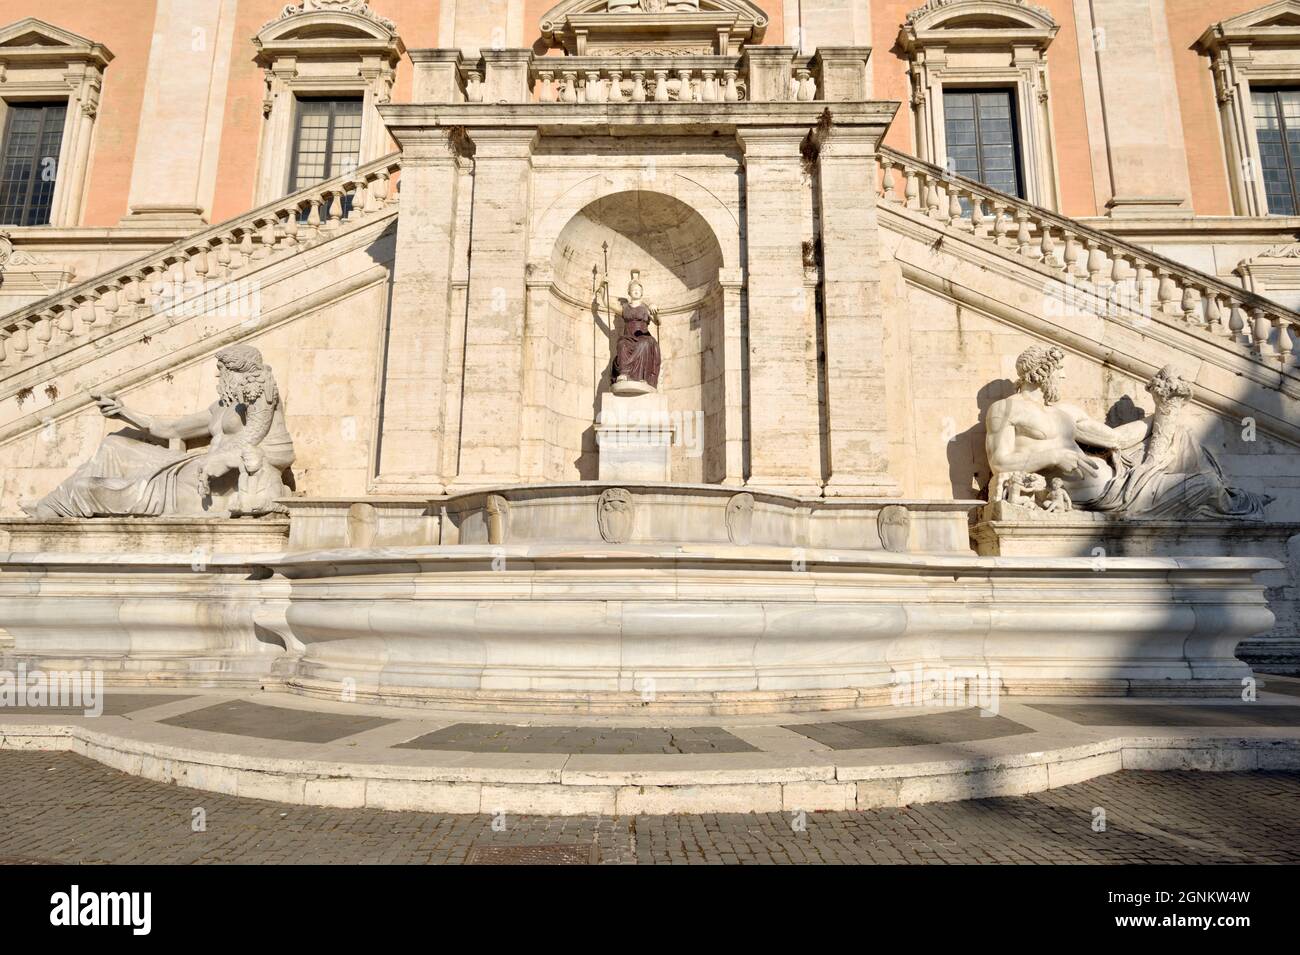 Italie, Rome, Piazza del Campidoglio, Palazzo Senatorio, escalier avec la statue de la déesse romaine Roma, à l'origine Minerva (1st siècle après J.-C.) Banque D'Images